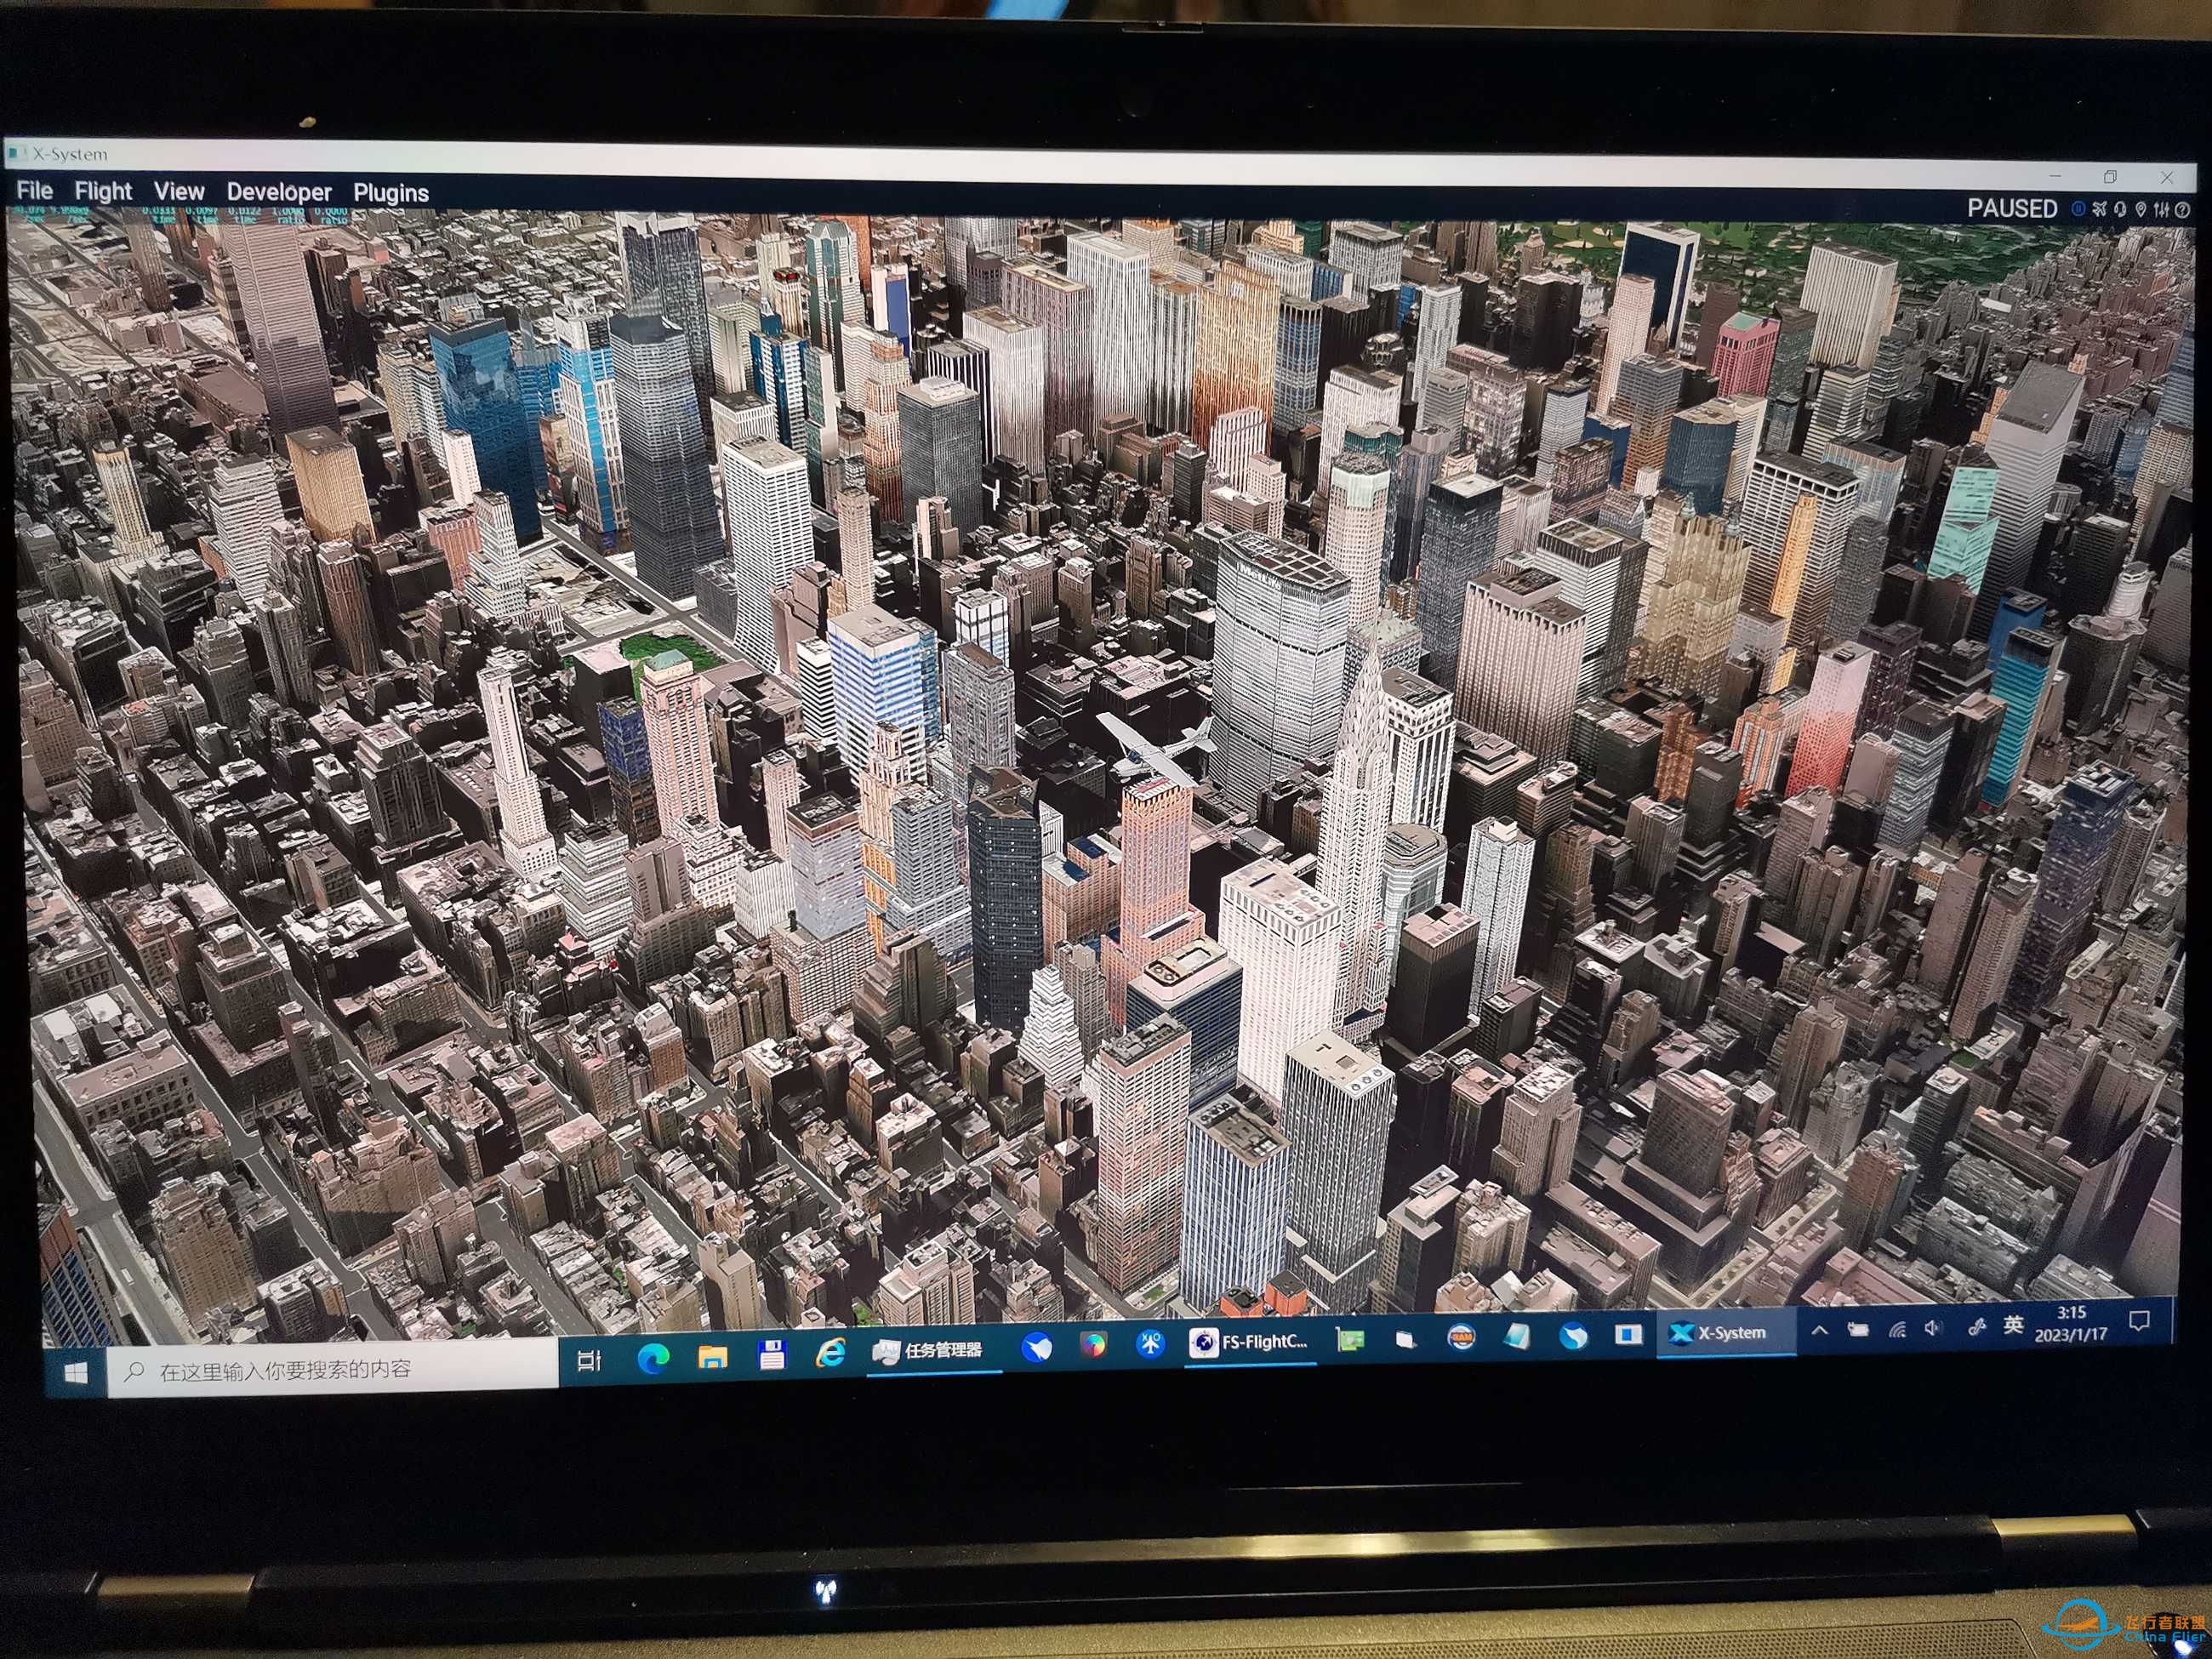 XP11插件地景还是很详细的-见纽约城市截图-7231 